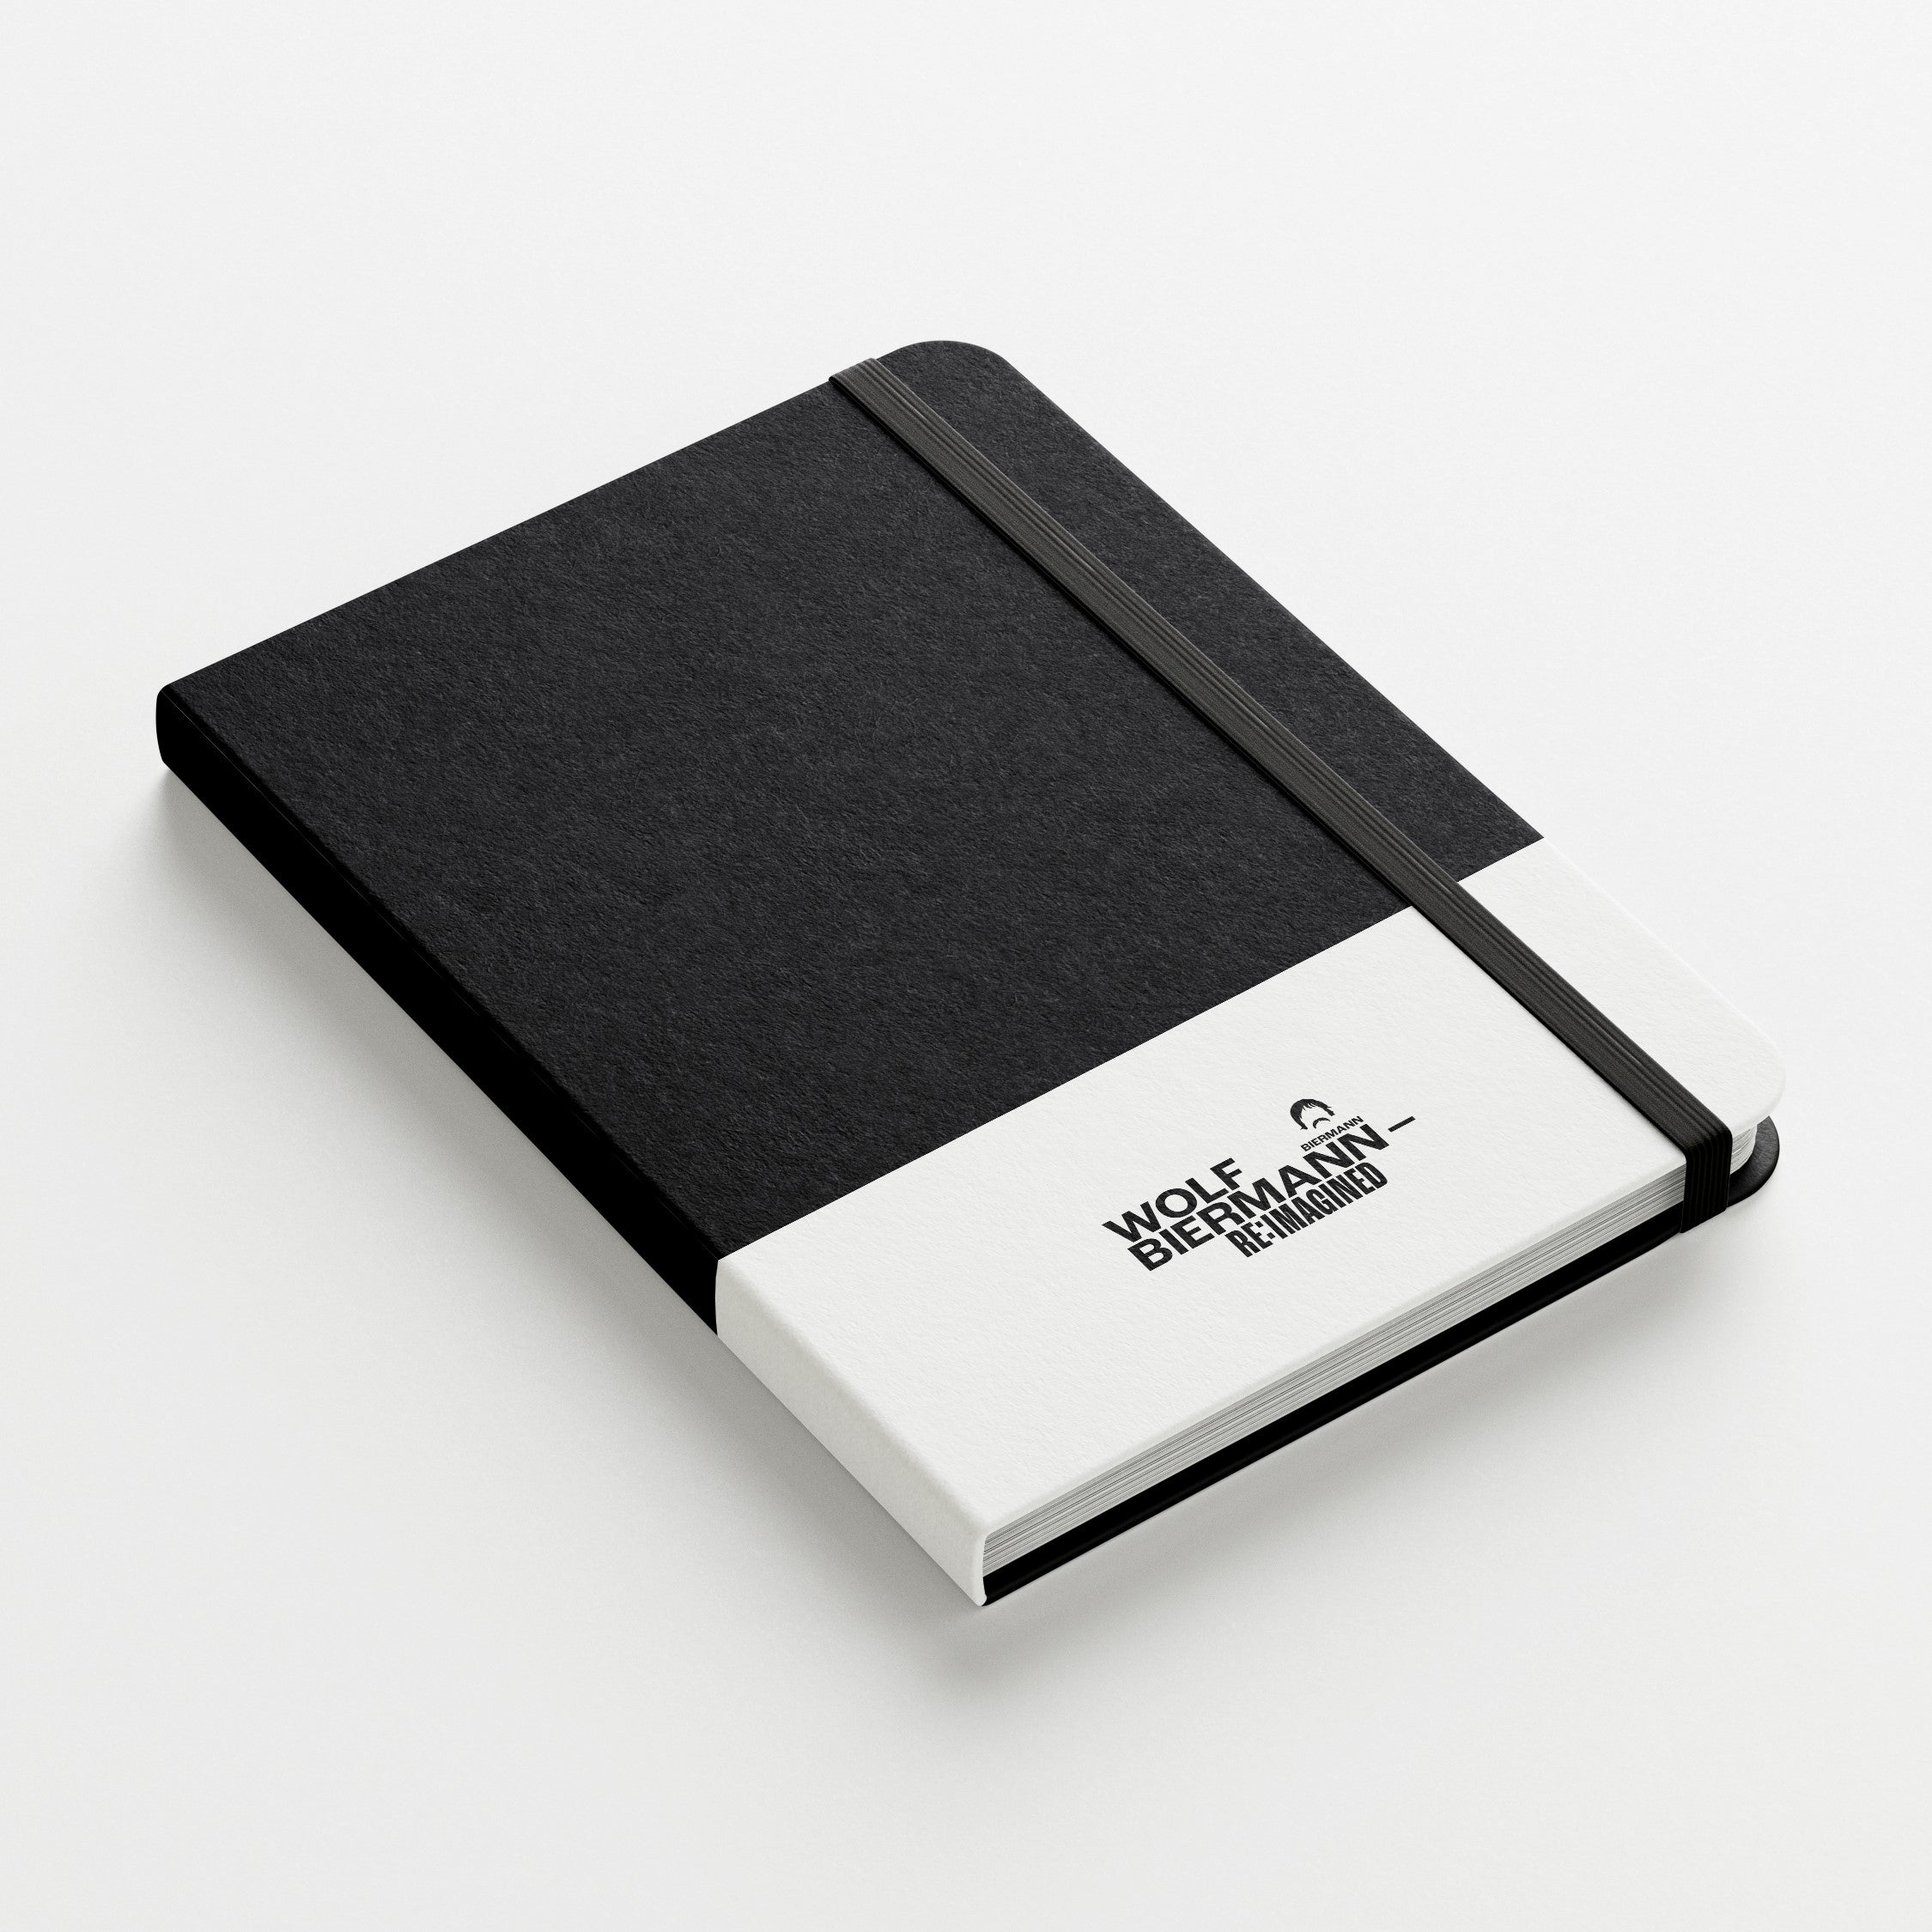 Wolf Biermann Notizbuch (Black Notebook)